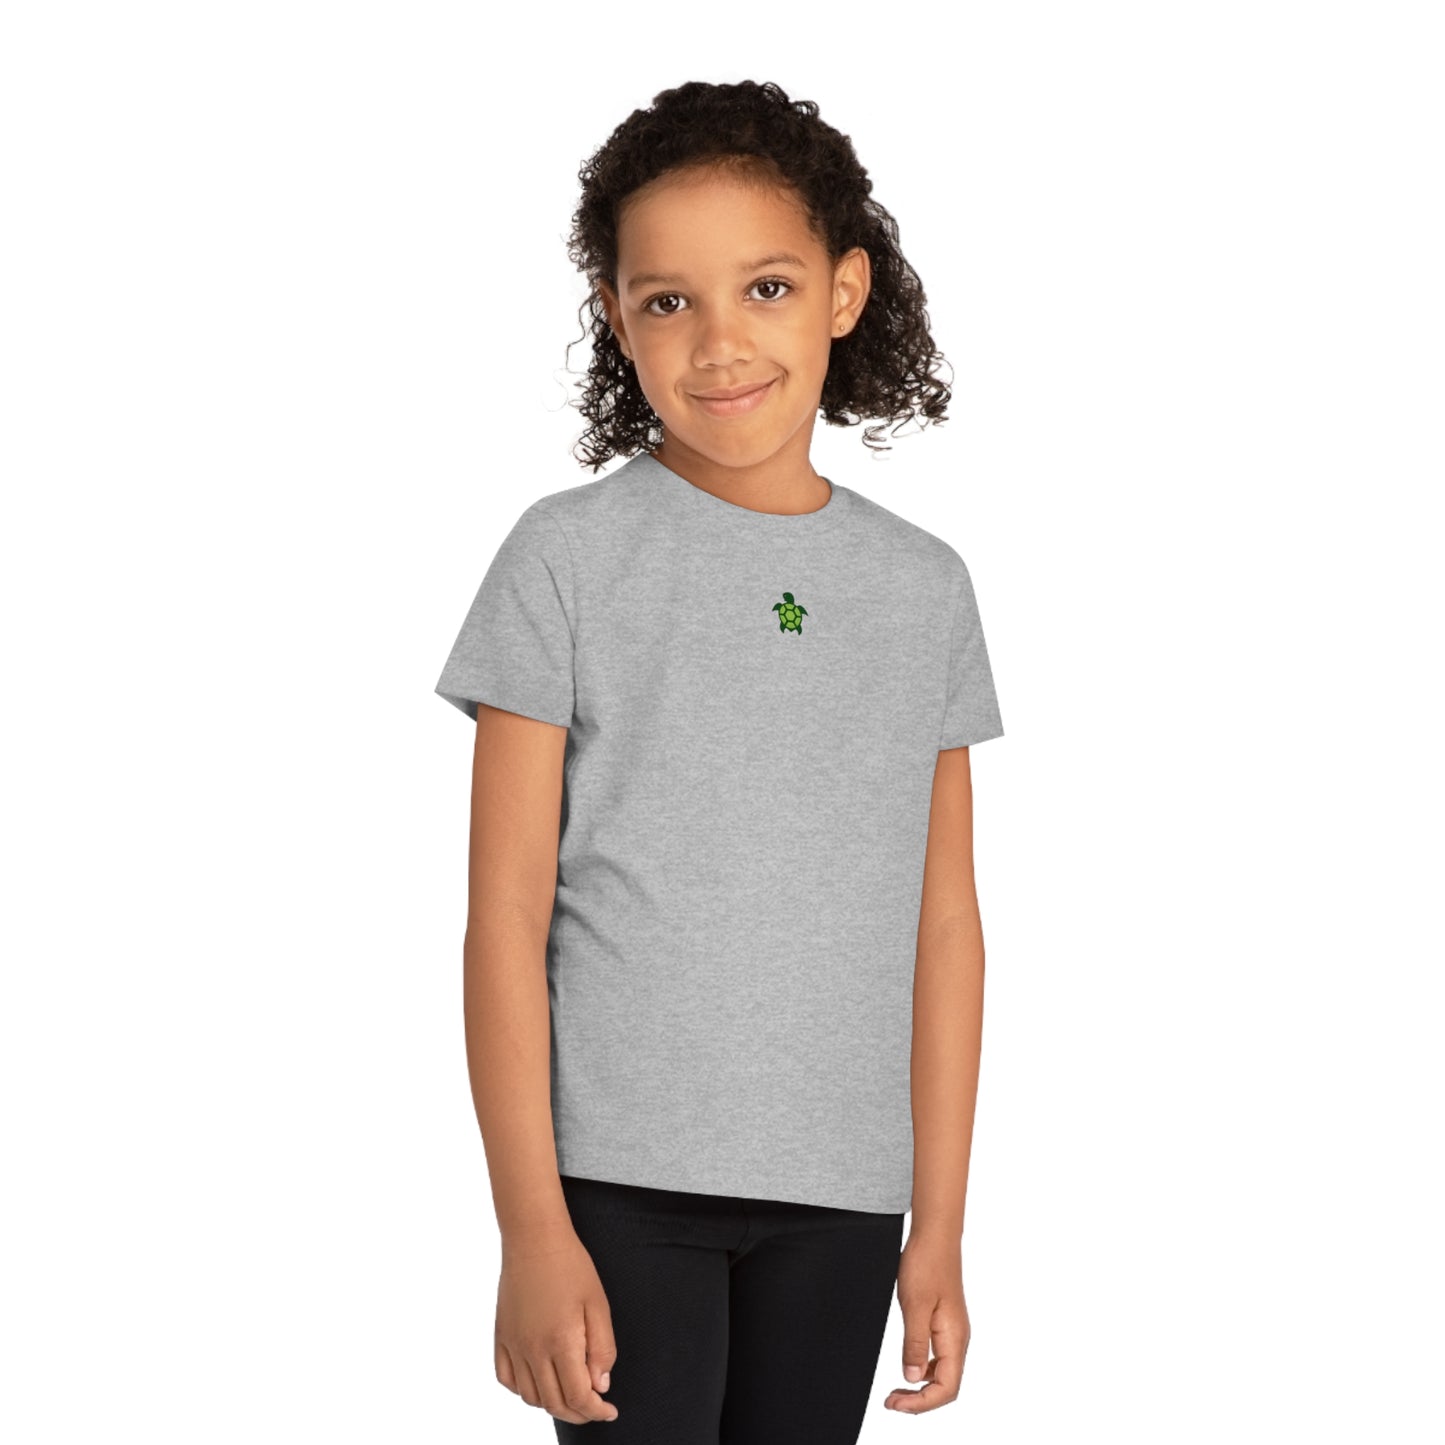 Turtlez Kids' T-Shirt